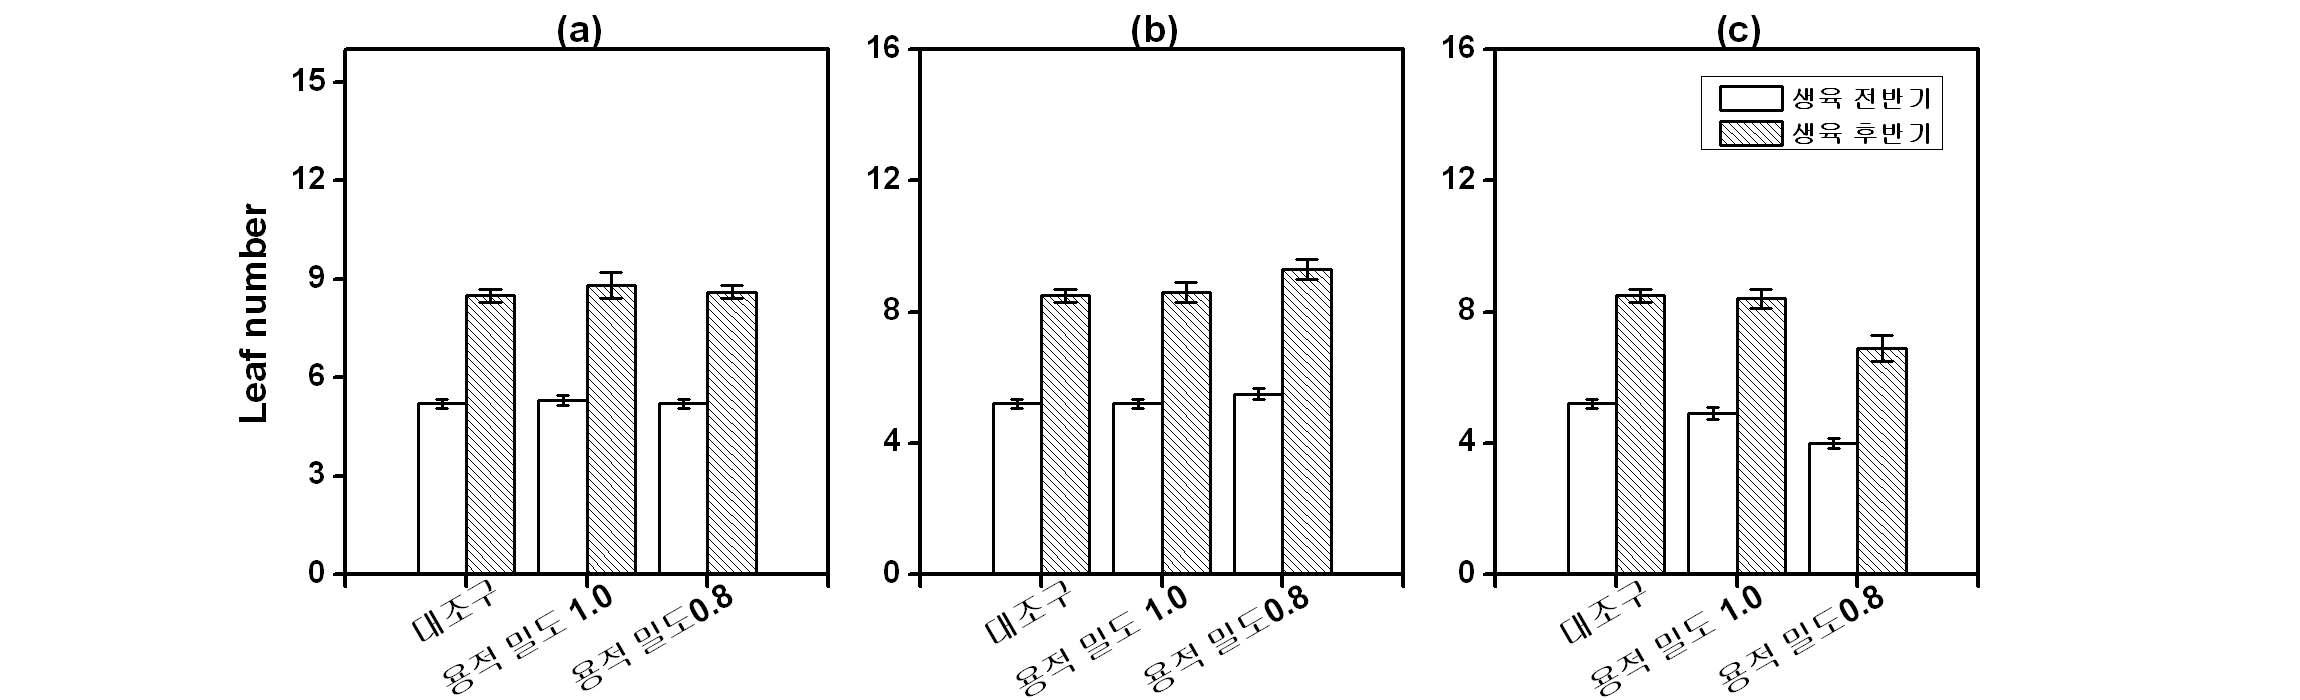 토양 용적 밀도에 따른 마늘의 엽수, (a) 코코피트; (b) 우드칩; (c) 퇴비